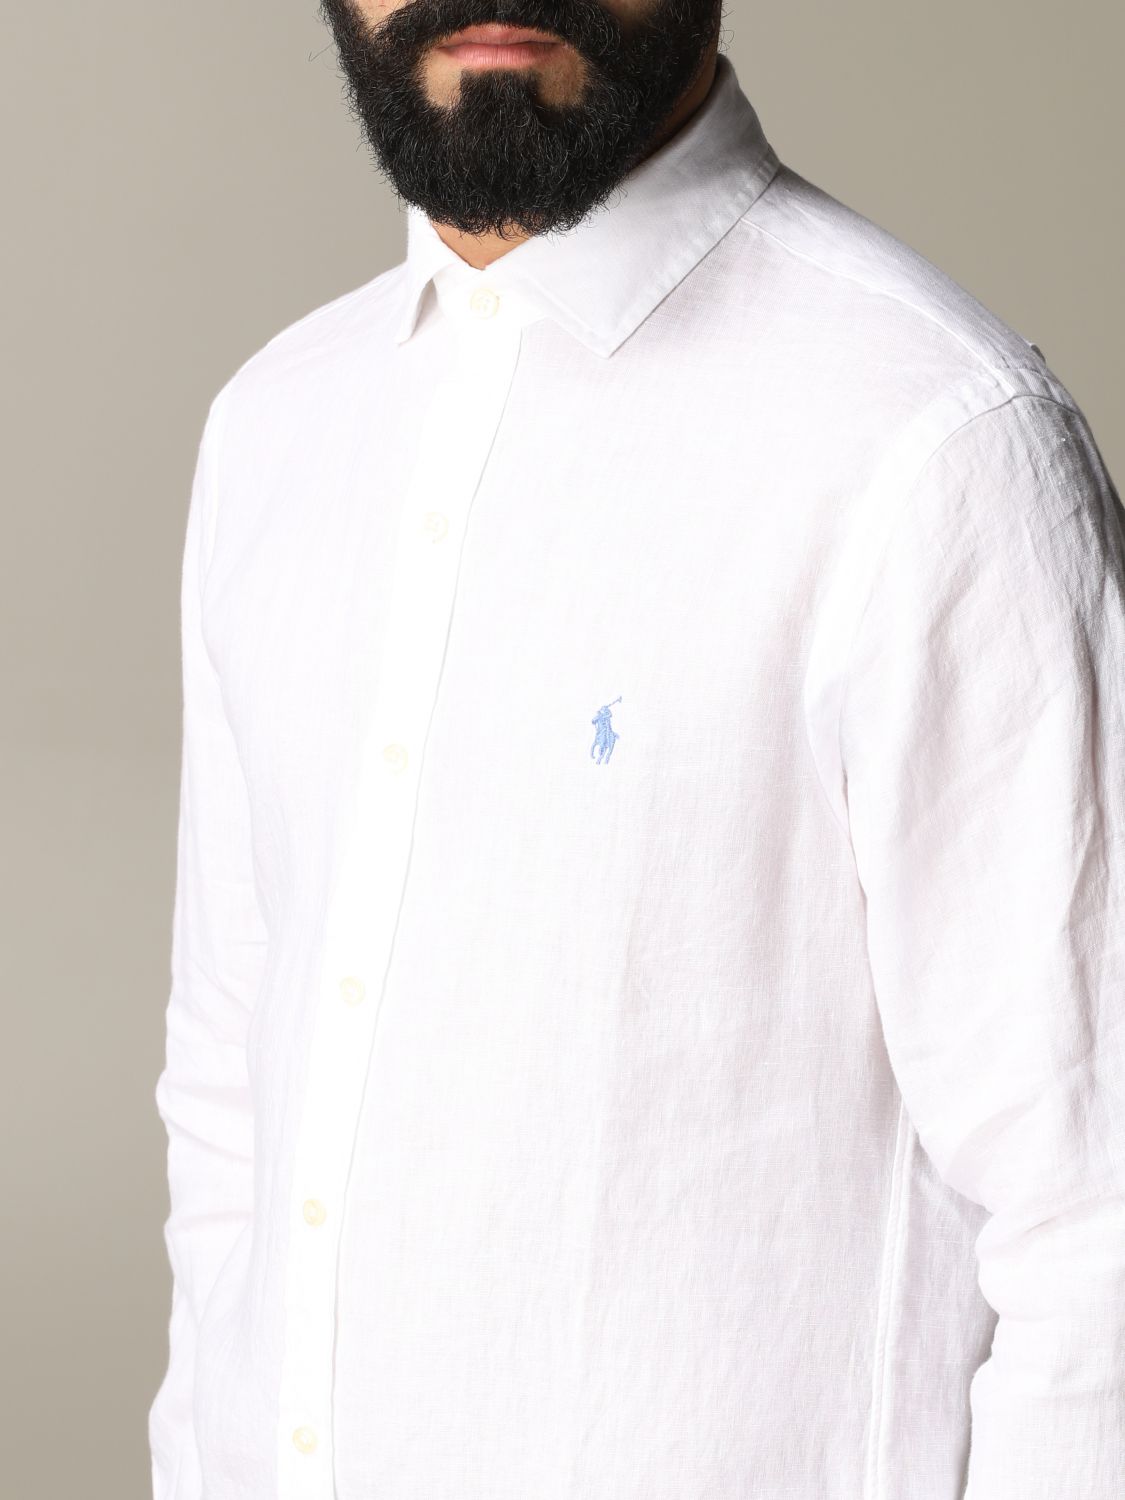 Shirt Polo Ralph Lauren: Polo Ralph Lauren shirt for man white 5